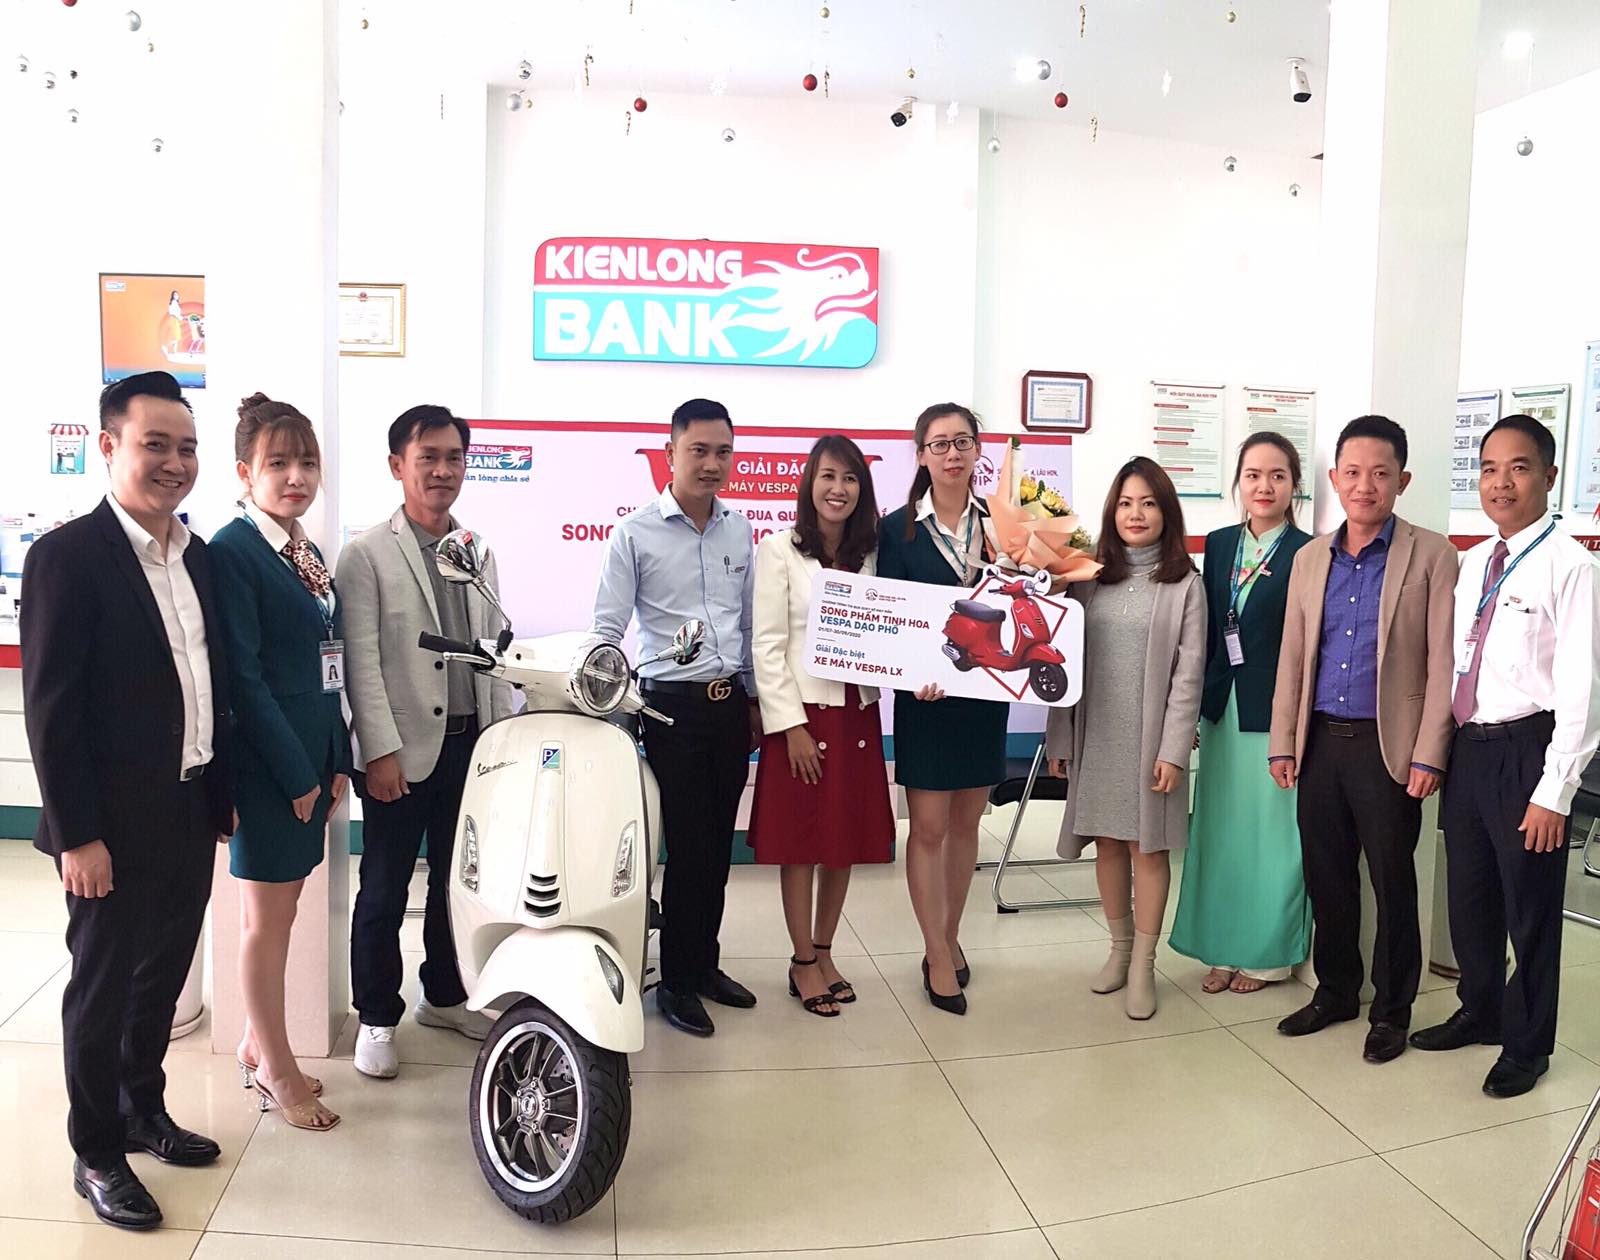 Kienlongbank Lâm Đồng trao thưởng xe Vespa cho nhân viên trúng thưởng lớn